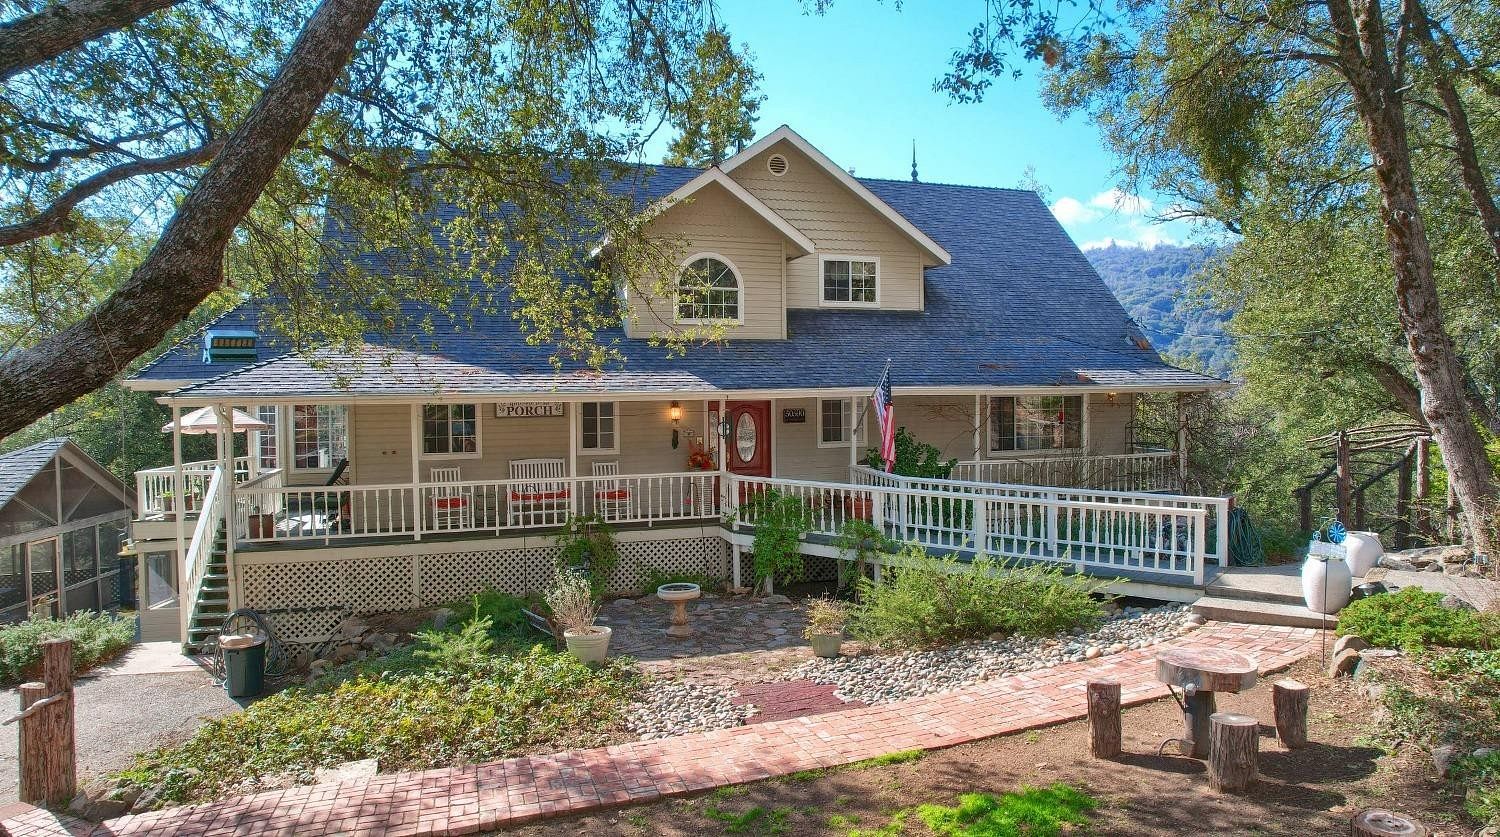 4.6 Acres of Residential Land & Home Oakhurst, California, CA